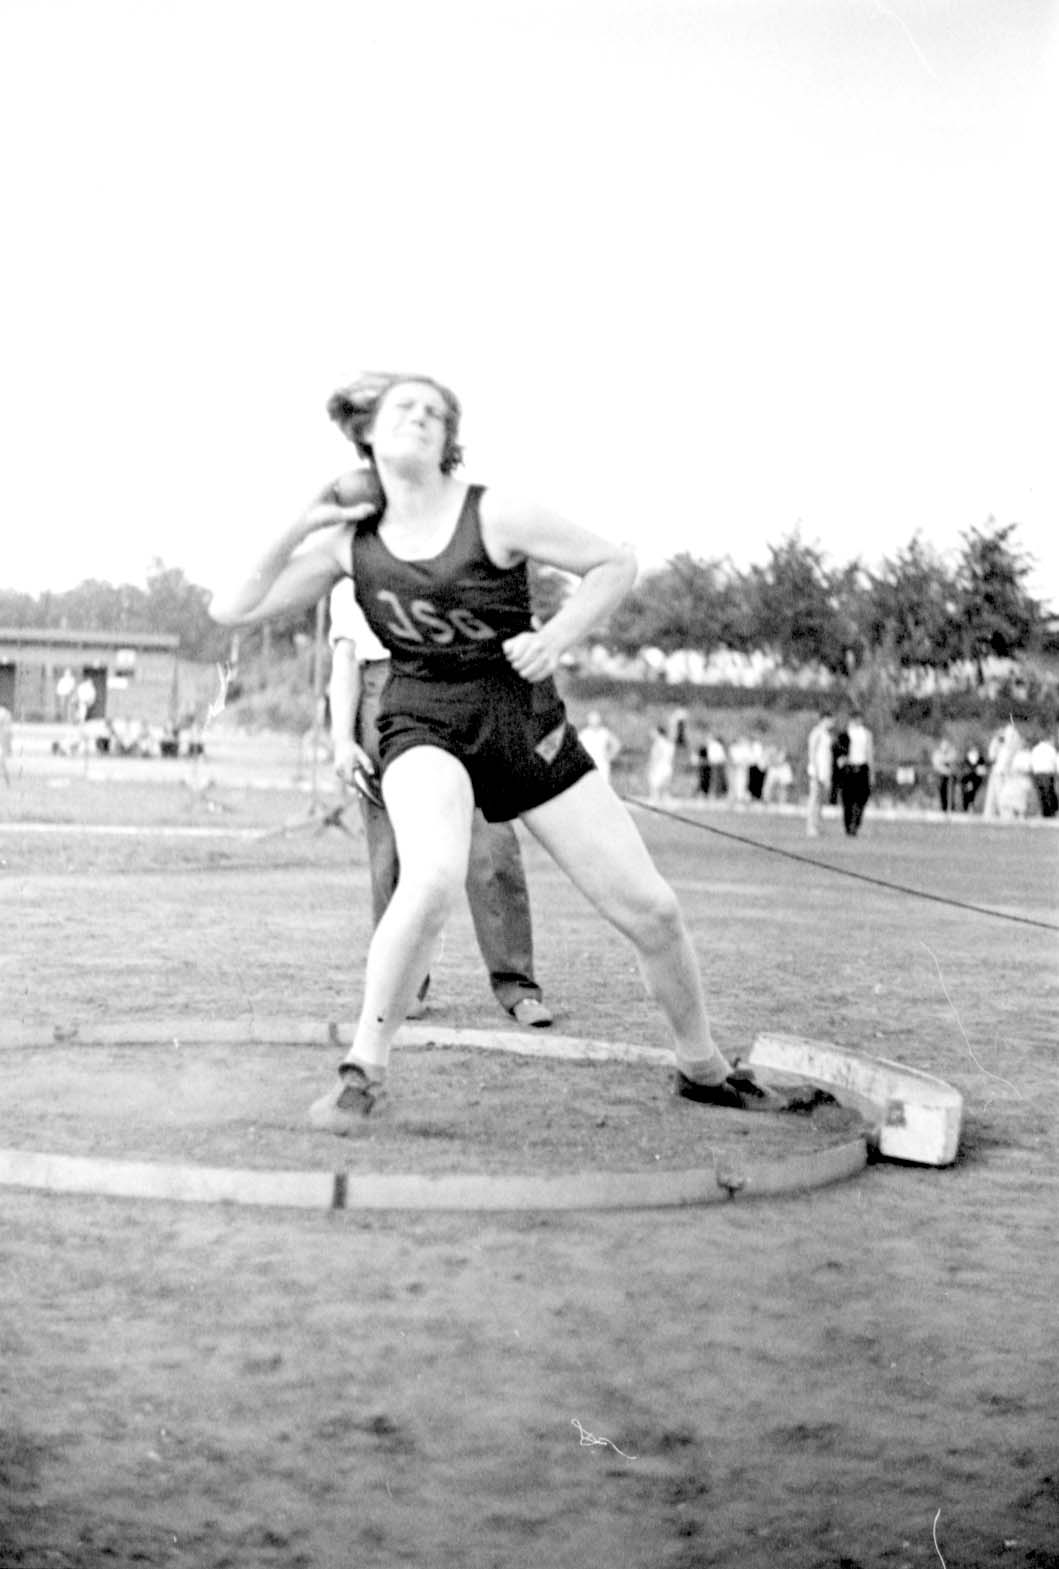 Berlín, Alemania, 4.7.1937, Ingeborg Mello, campeona de la competencia de lanzamiento de bala en un torneo deportivo judío